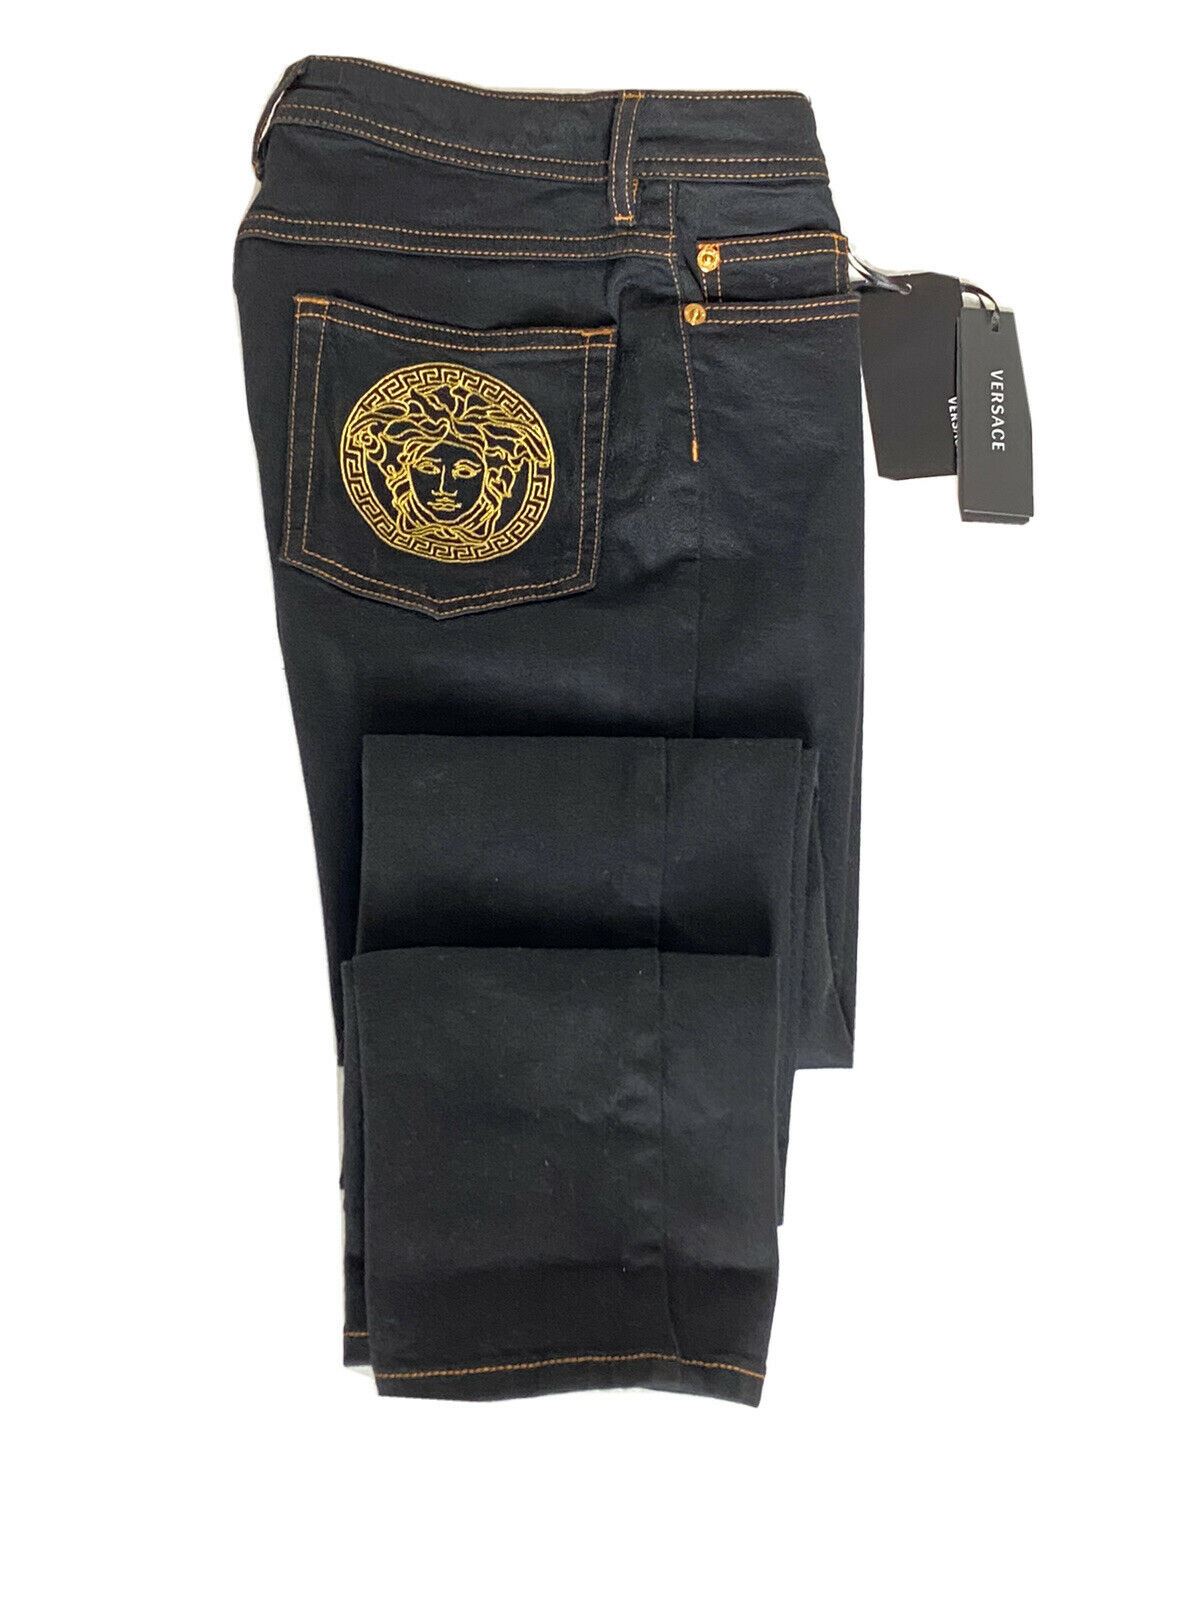 Женские черные джинсы Versace NWT, 500 долларов США, размер 25, США, A89556S, сделано в Италии